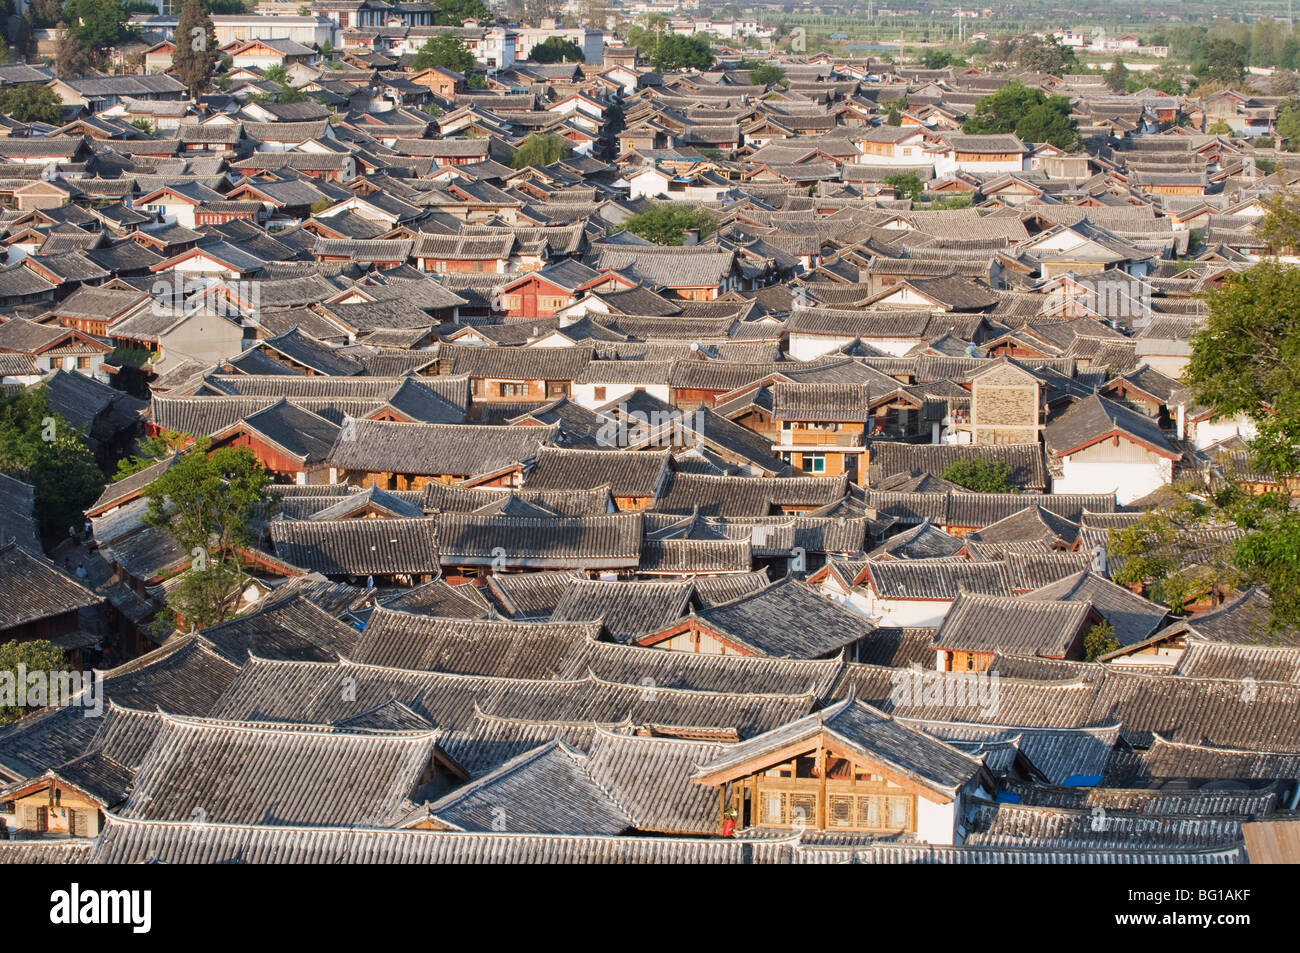 Abri international bondé dans la vieille ville de Lijiang, Site du patrimoine mondial de l'UNESCO, la Province du Yunnan, Chine, Asie Banque D'Images